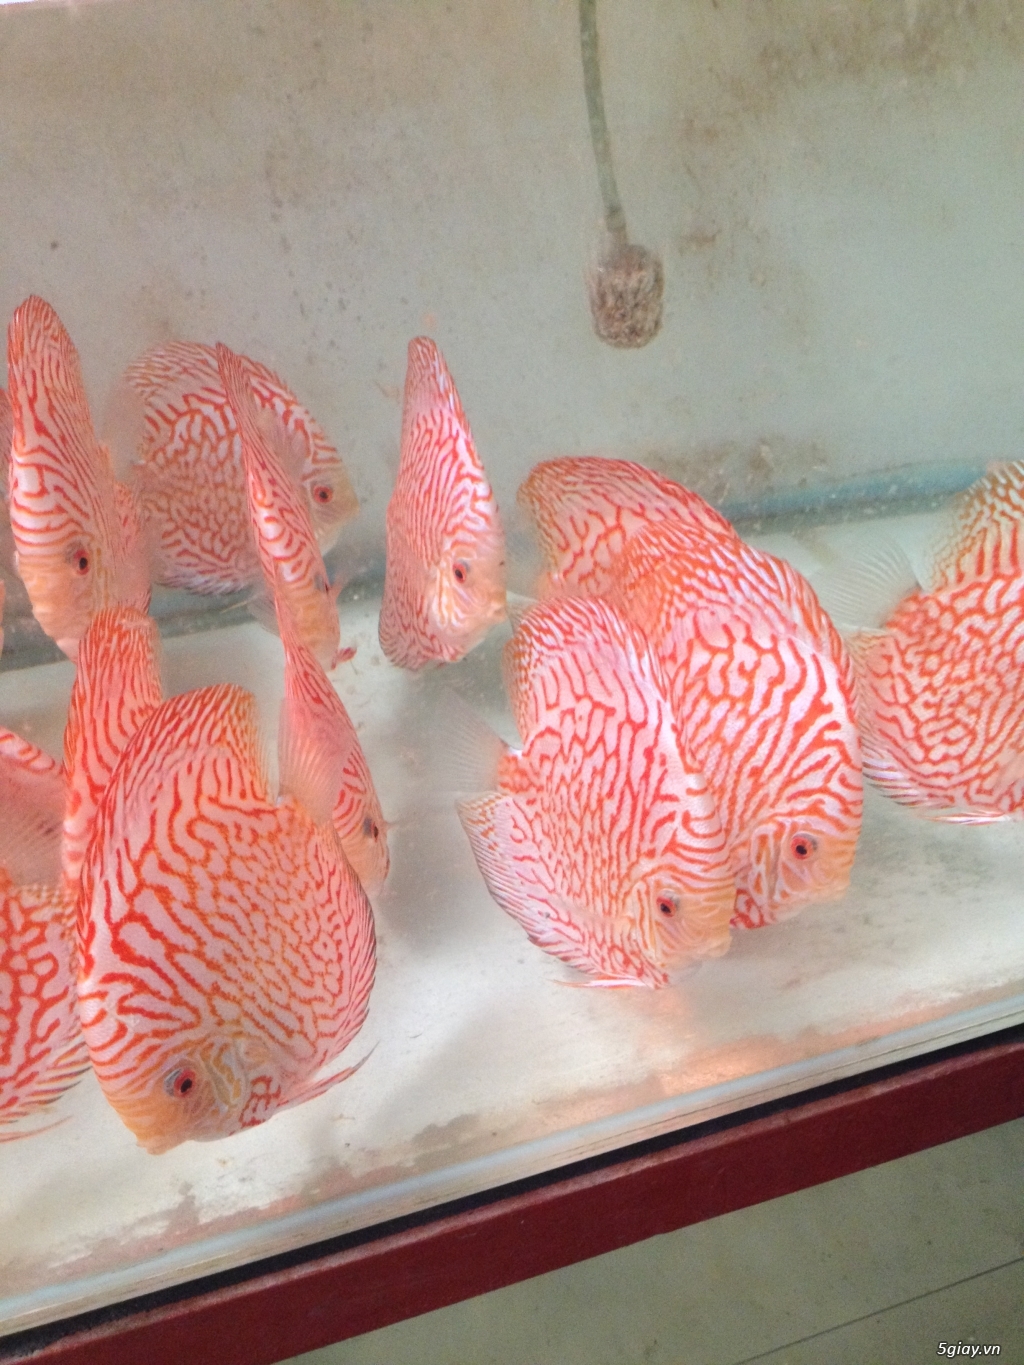 Bán cá Dĩa Giá Rẽ - Trại cá Dĩa Huỳnh Lễ tại SG bán các loại cá Dĩa - 2